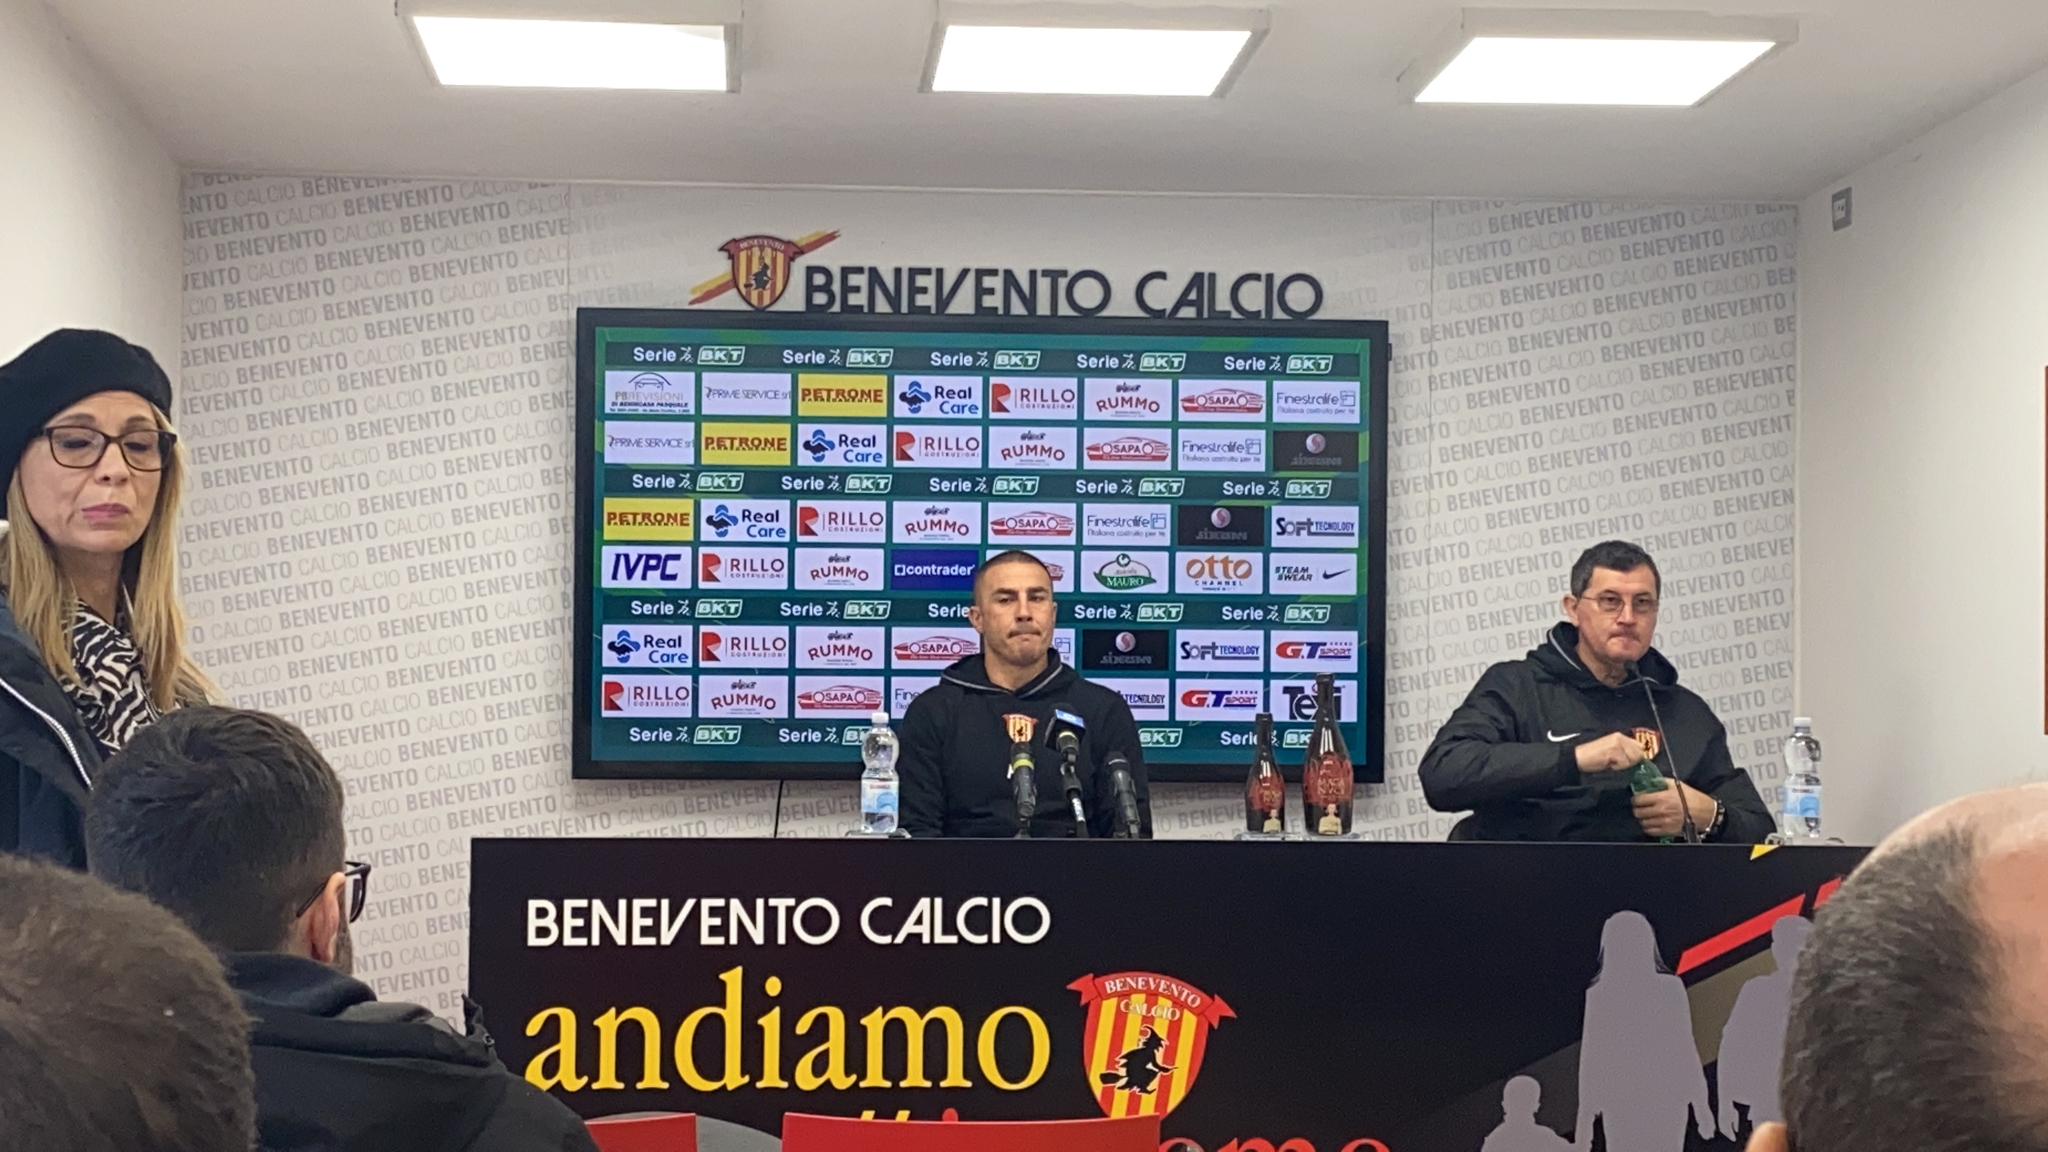 Benevento, Cannavaro: “Voglio vedere risposte sul campo e non in riunione. Coda? Non lo conosco. I nostri acquisti sono i rientri”